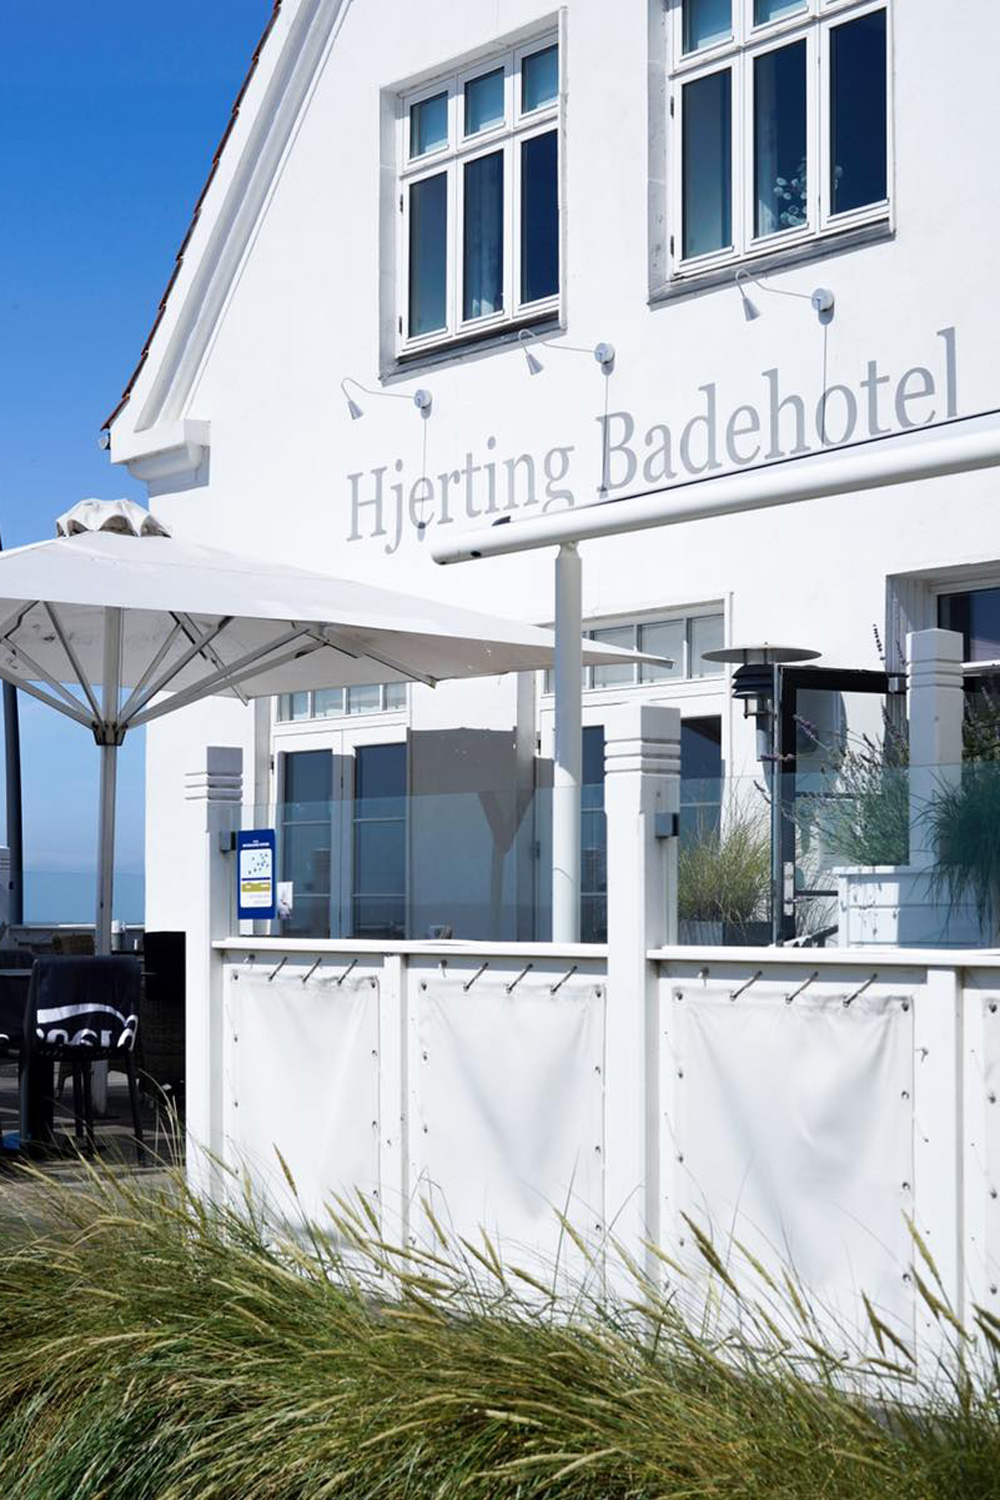 Hjerting Badehotel Esbjerg Denmark seaside resort hotel